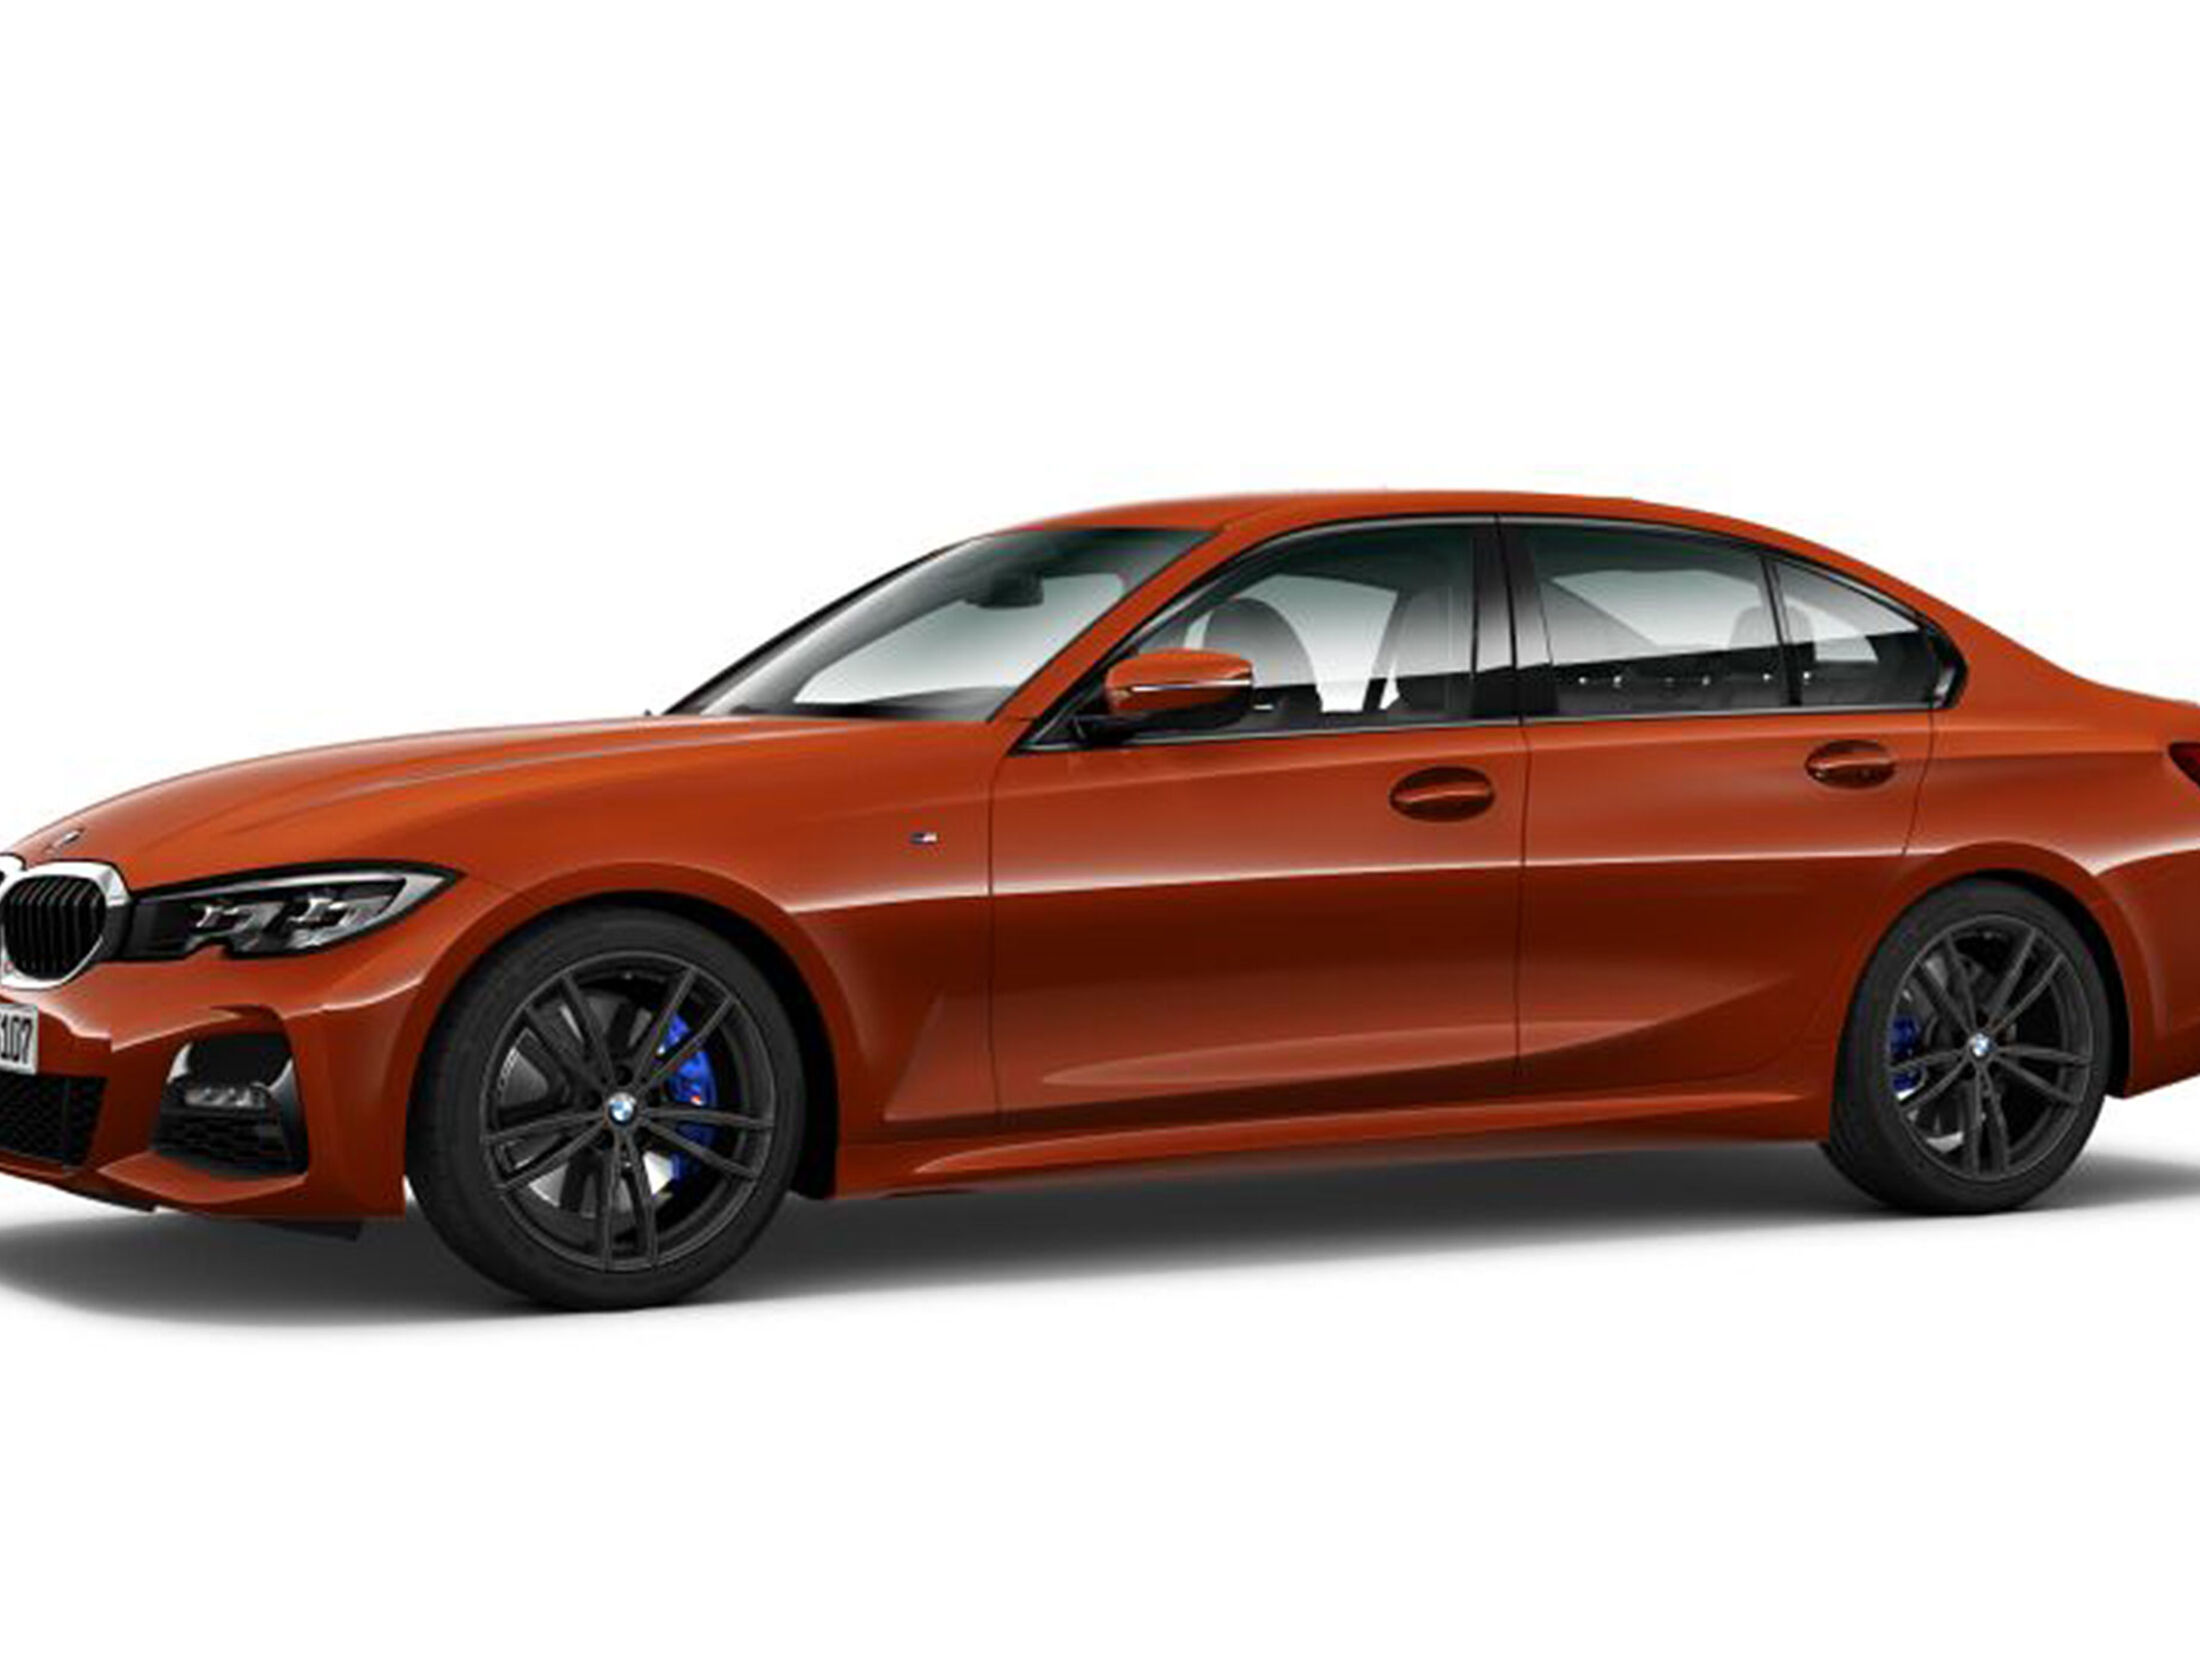 Neuer BMW 3er (G20) im Konfigurator: 330i für 74.300 Euro